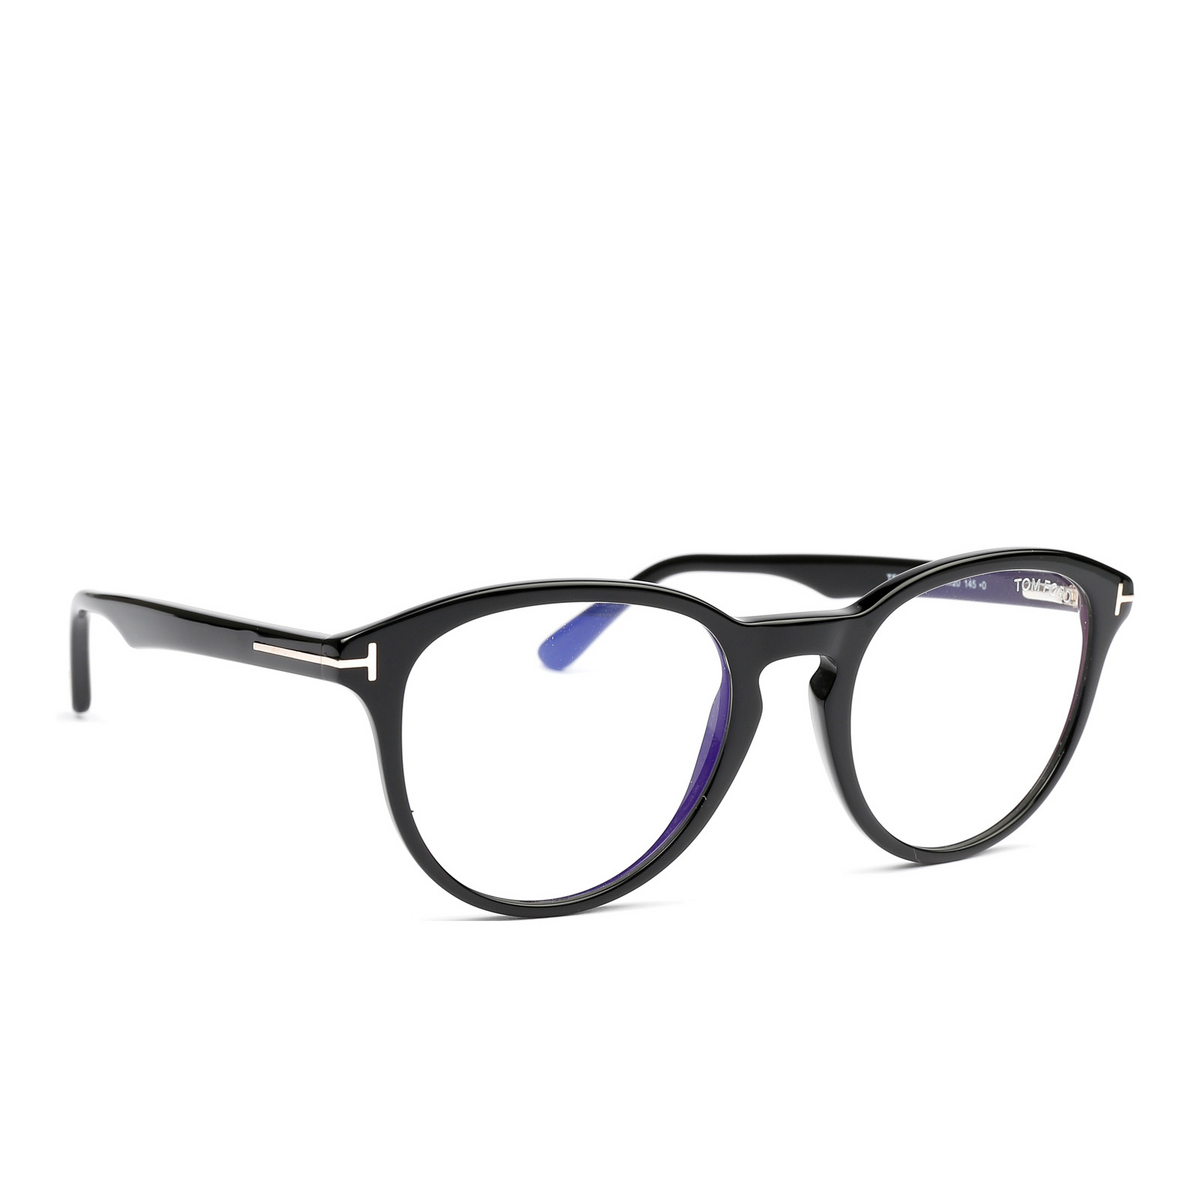 Tom Ford® Round Eyeglasses: FT5556-B color 001 - three-quarters view.